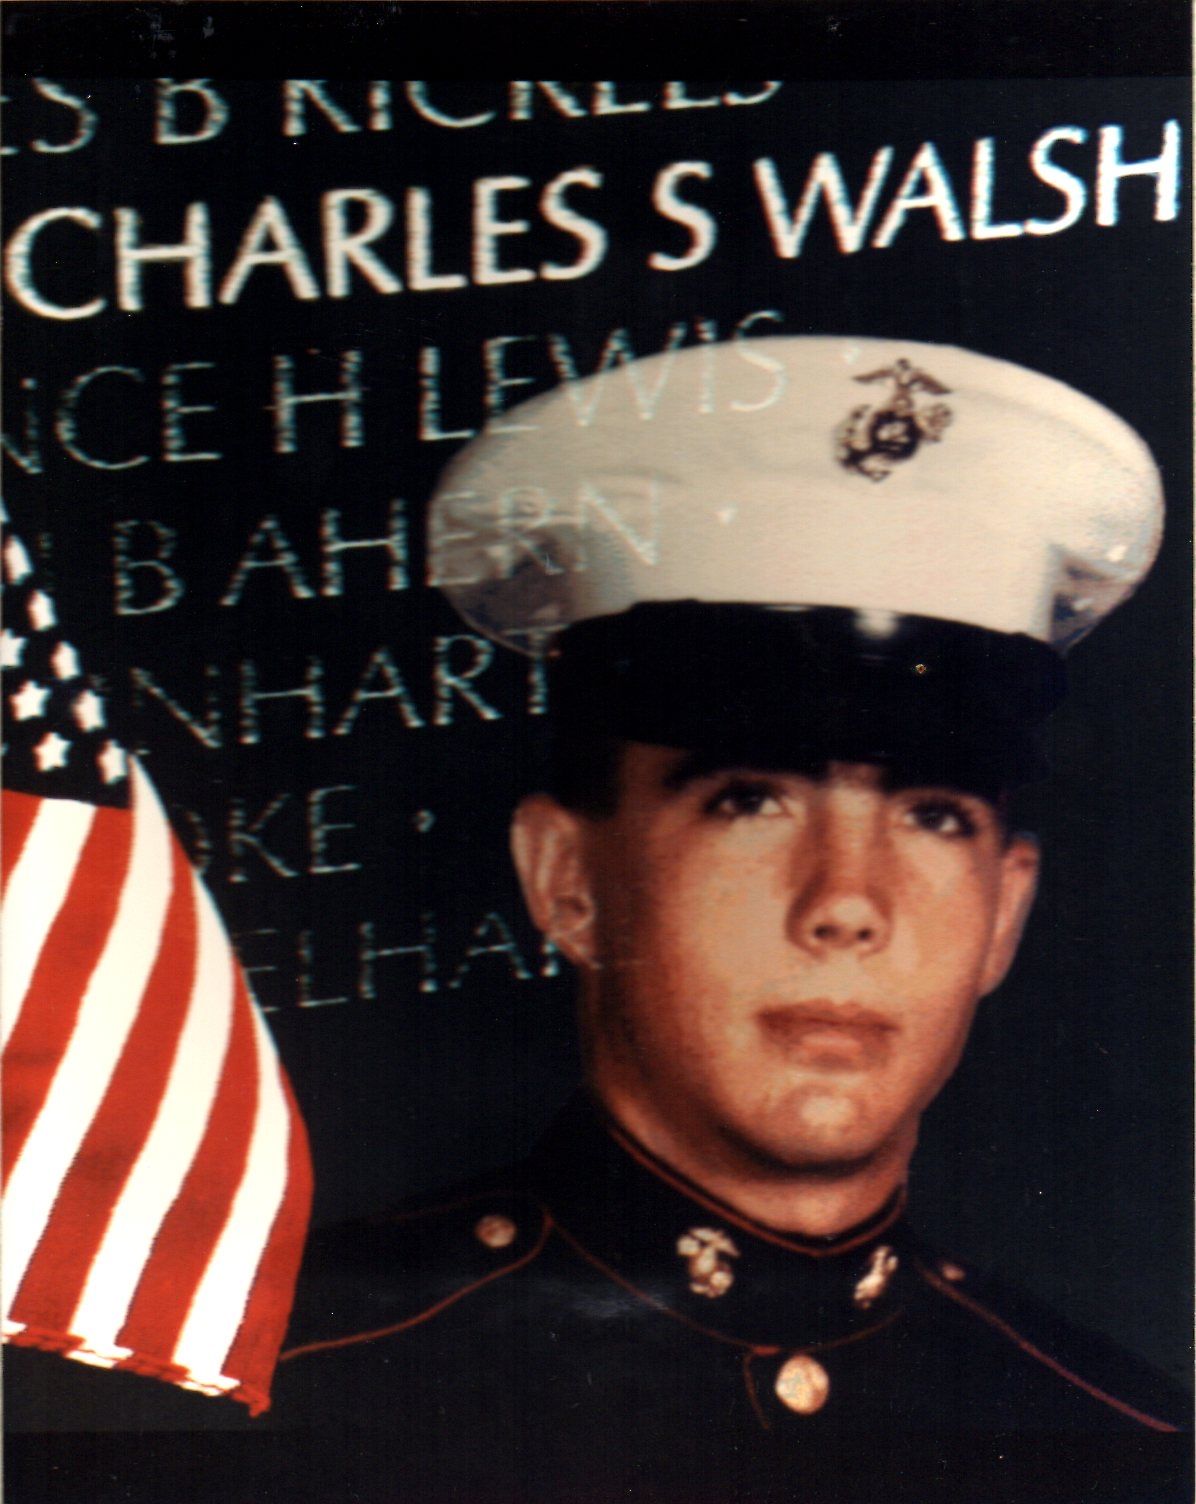 Charles S. Walsh